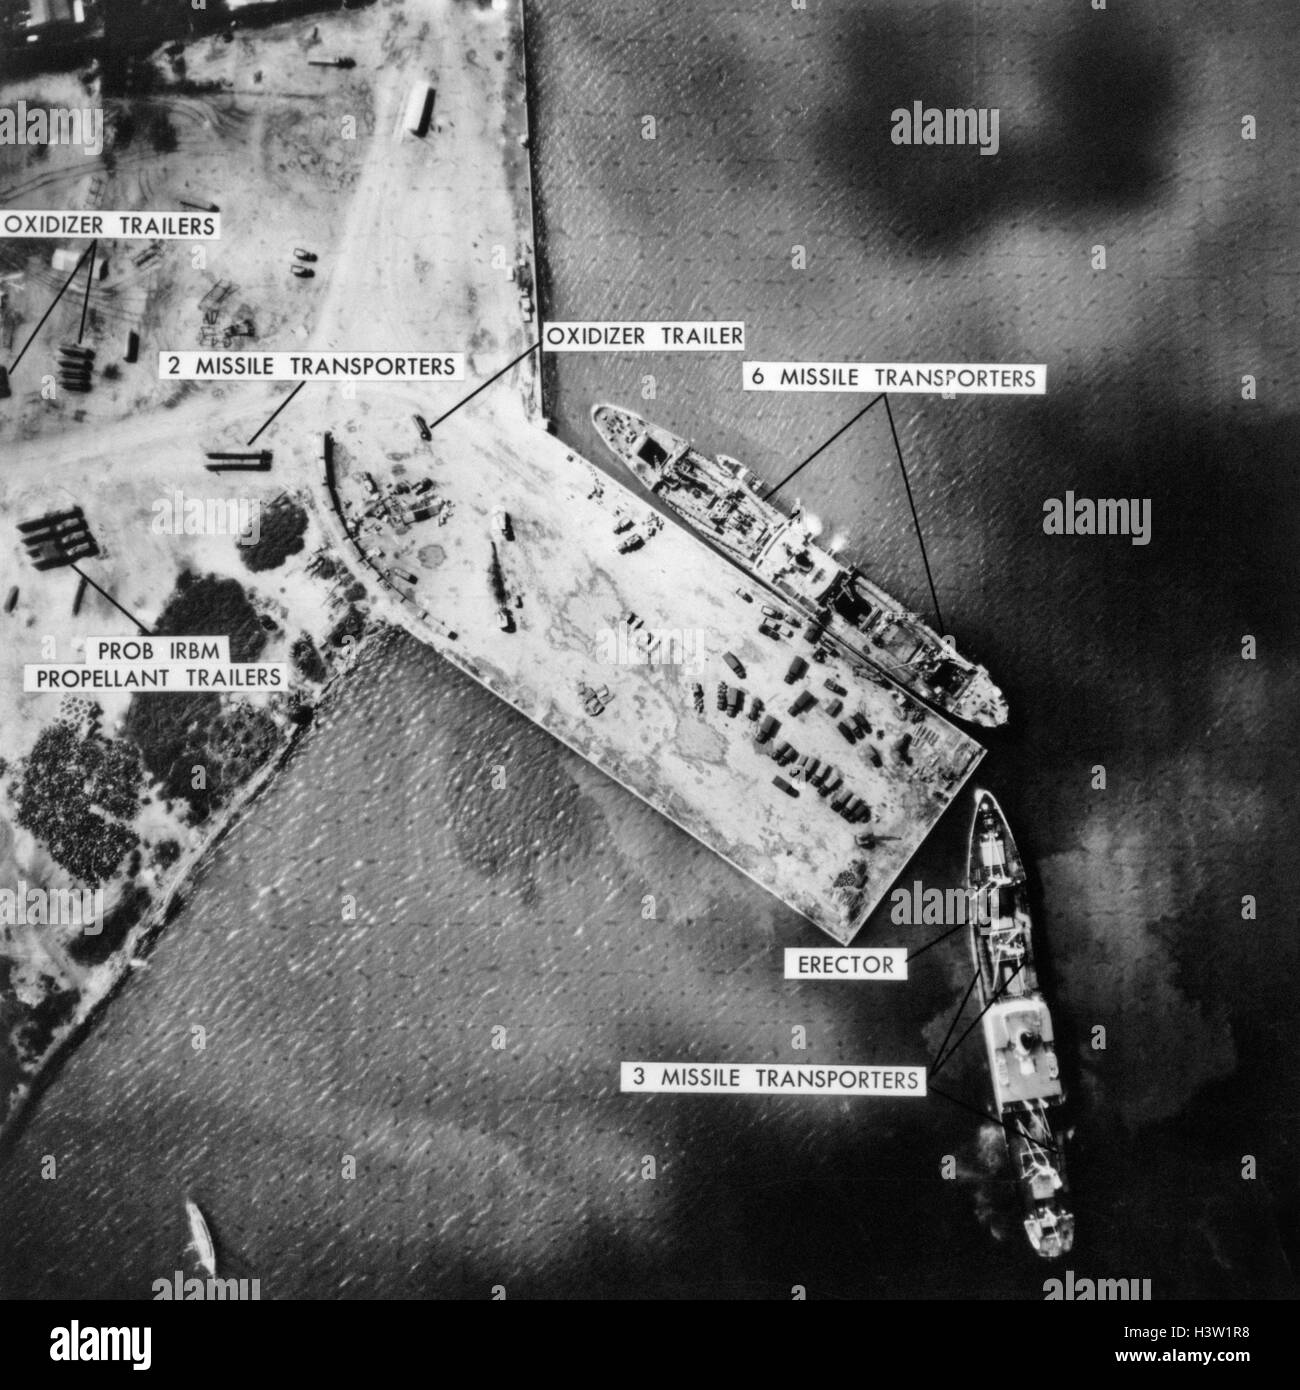 1960 5 novembre 1962 PHOTO révèle maintenant chargé de l'équipement de missiles sur les cargos À QUAI JUSQU'À LA CRISE DES MISSILES DE CUBA Banque D'Images